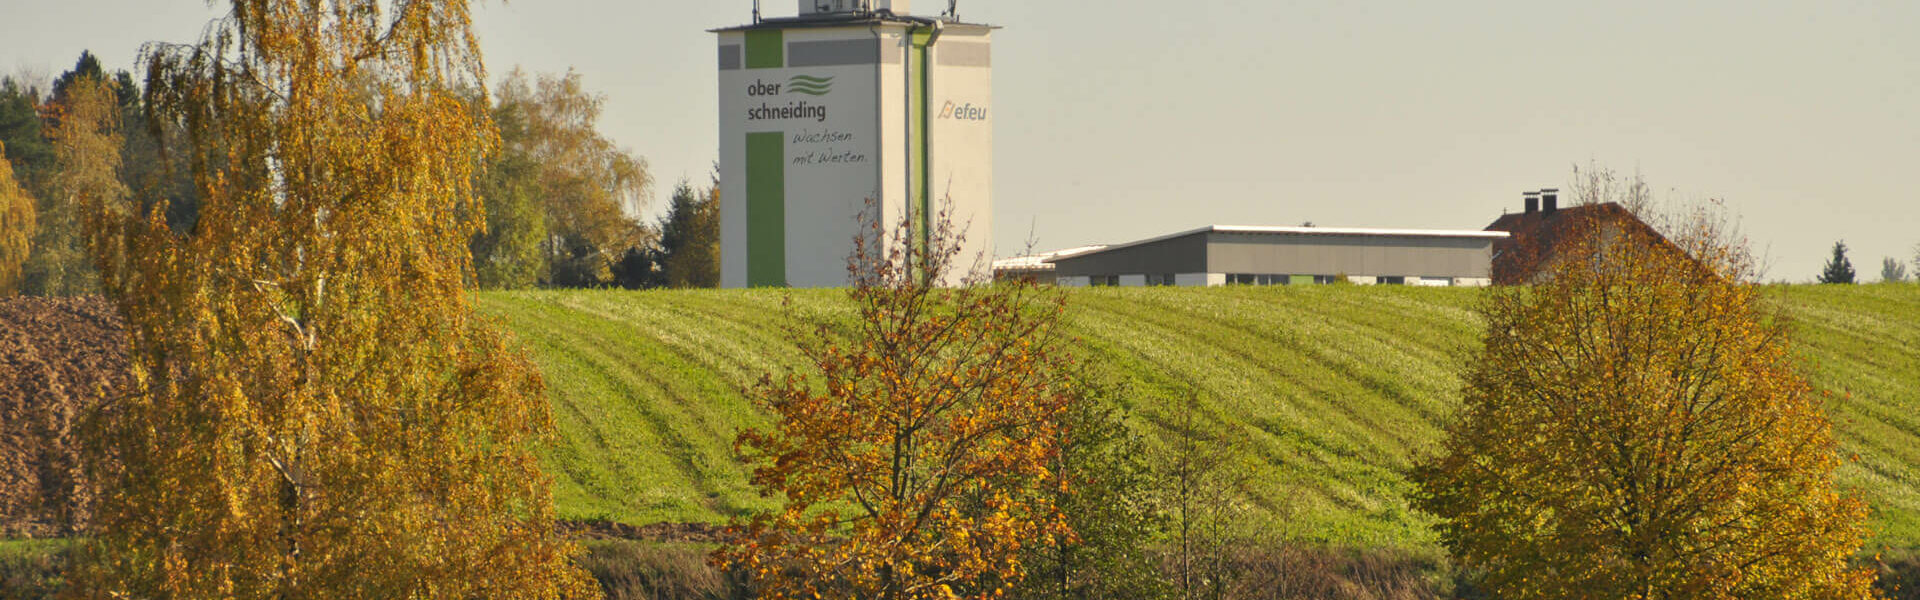 Panoramafoto mit ef.eu Gebäude im Hintergrund